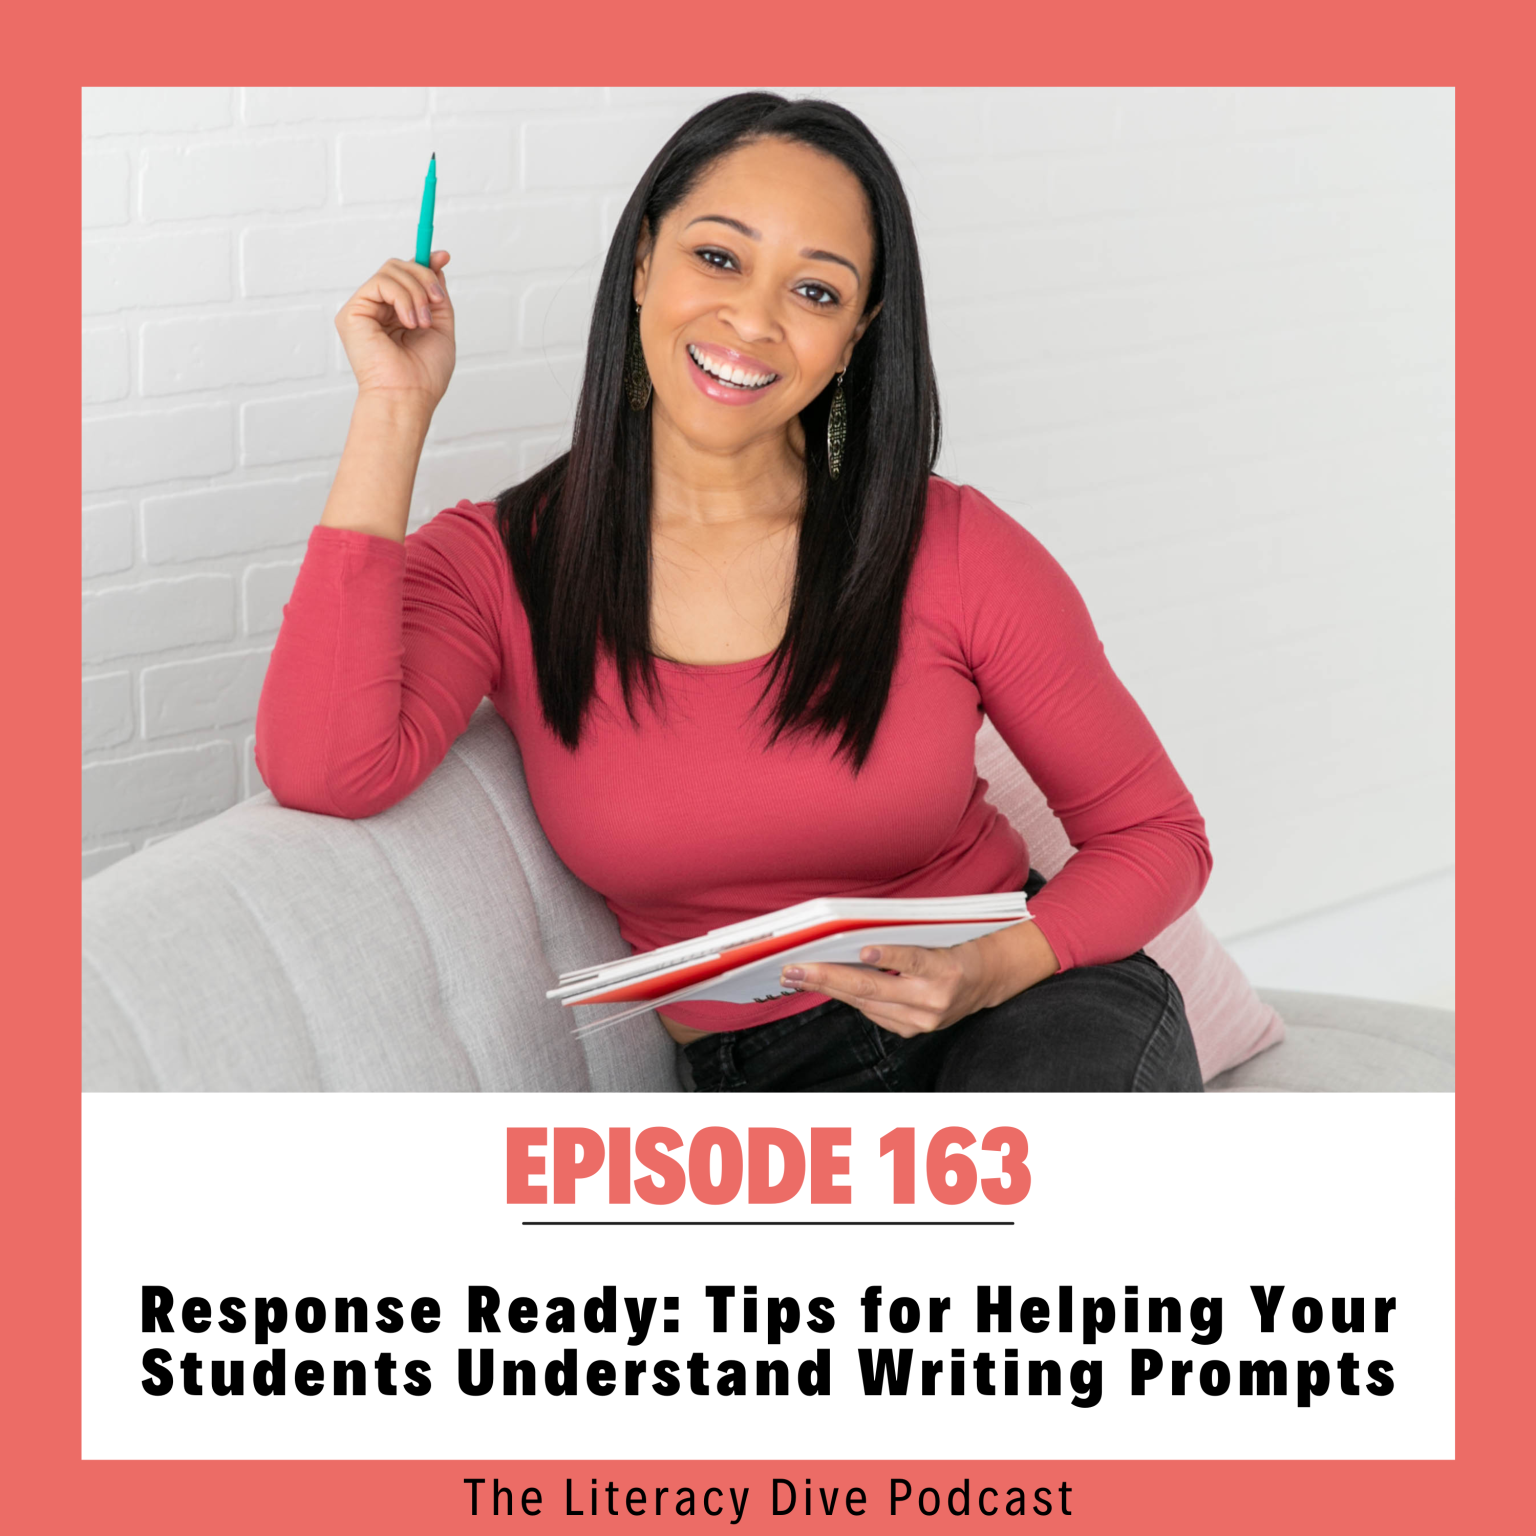 understanding-writing-prompts